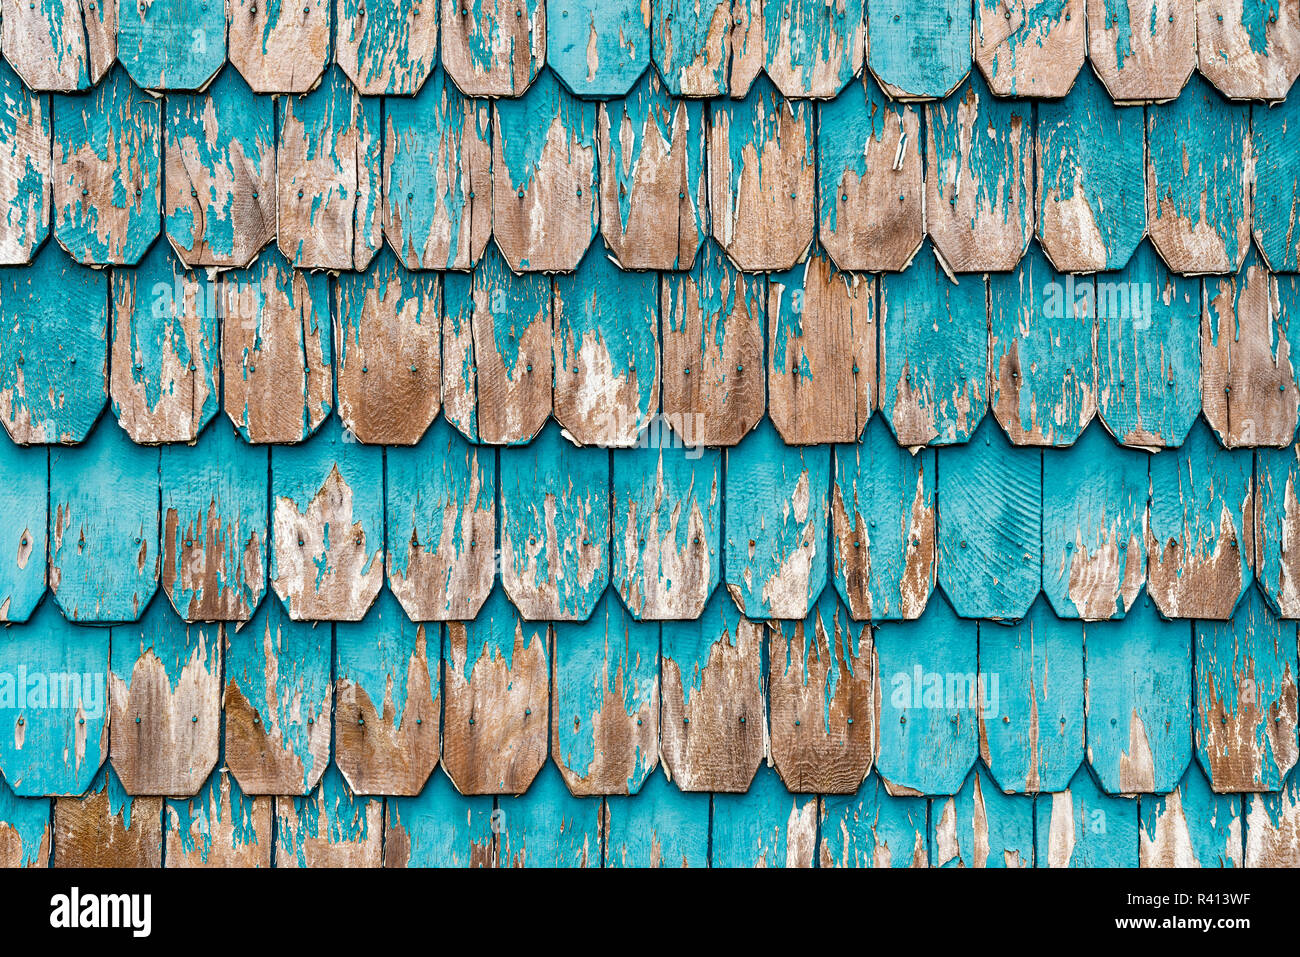 Árbol de alerce paneles de madera utilizados en el muro exterior de casas en el distrito de los Lagos de Chile en las ciudades de Puerto Montt, Puerto Varas, Chile Isla. Foto de stock